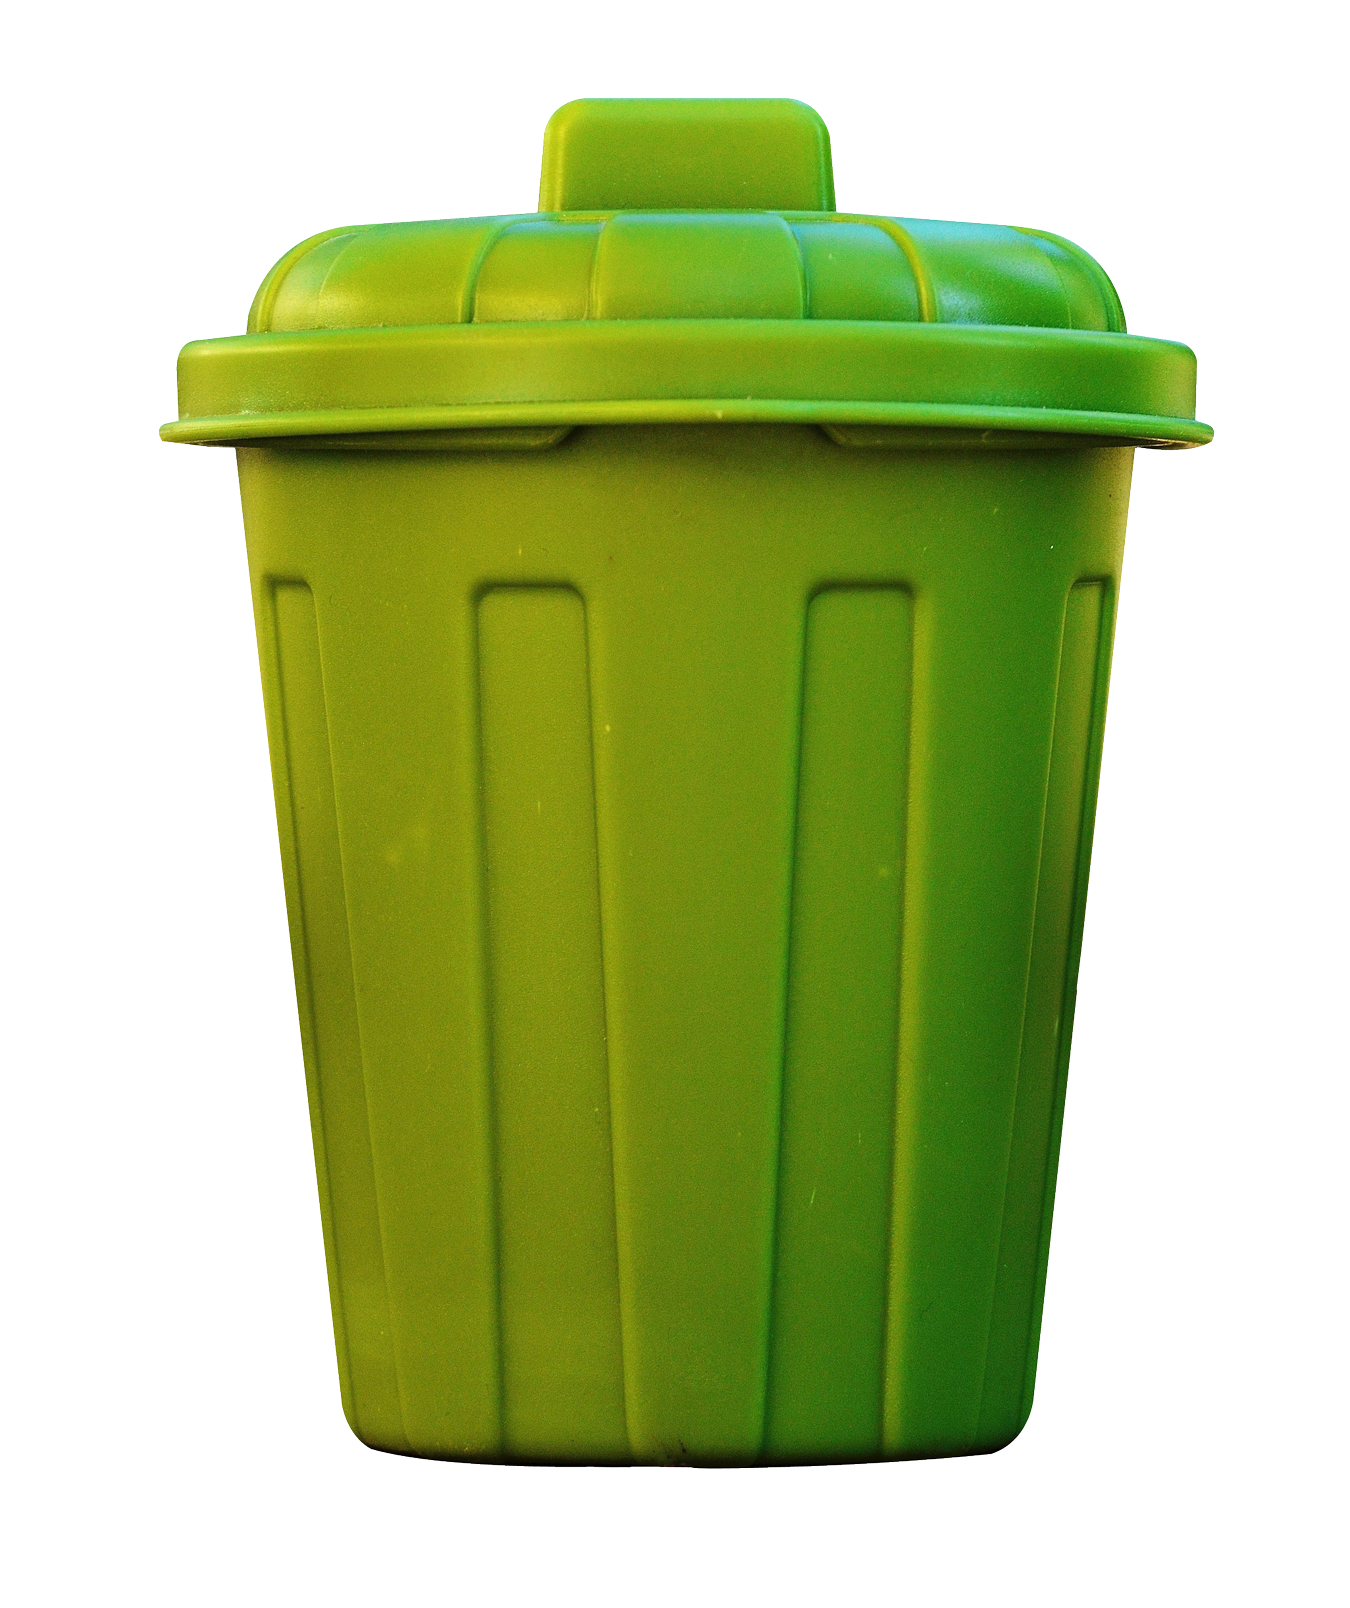 Garbage Bin PNG High-Quality Image